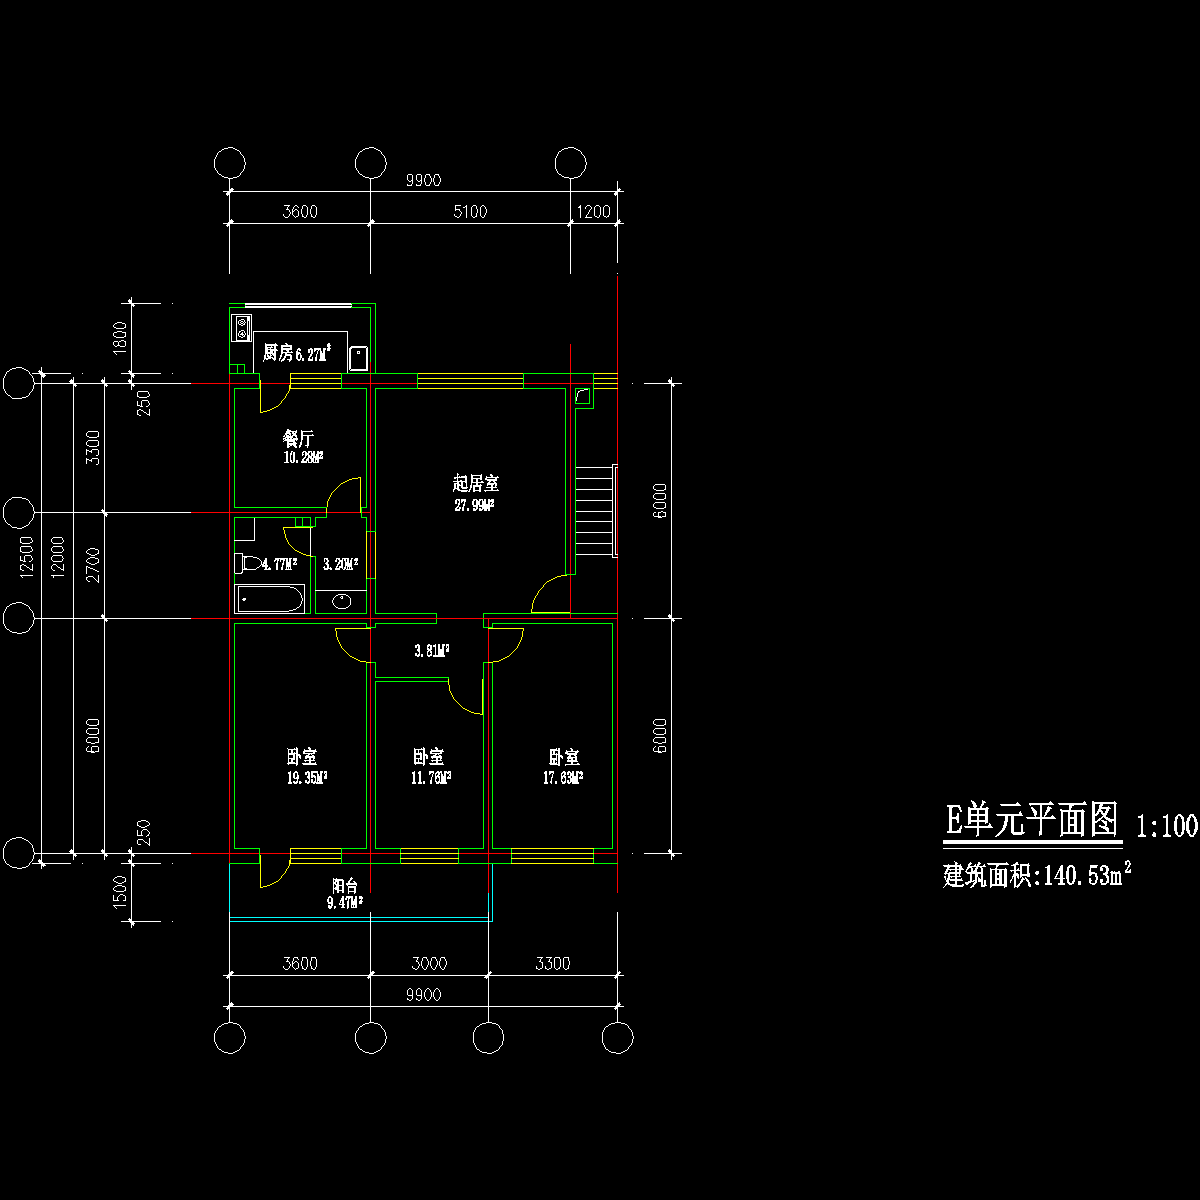 板式多层三室单户户型CAD图纸(141)